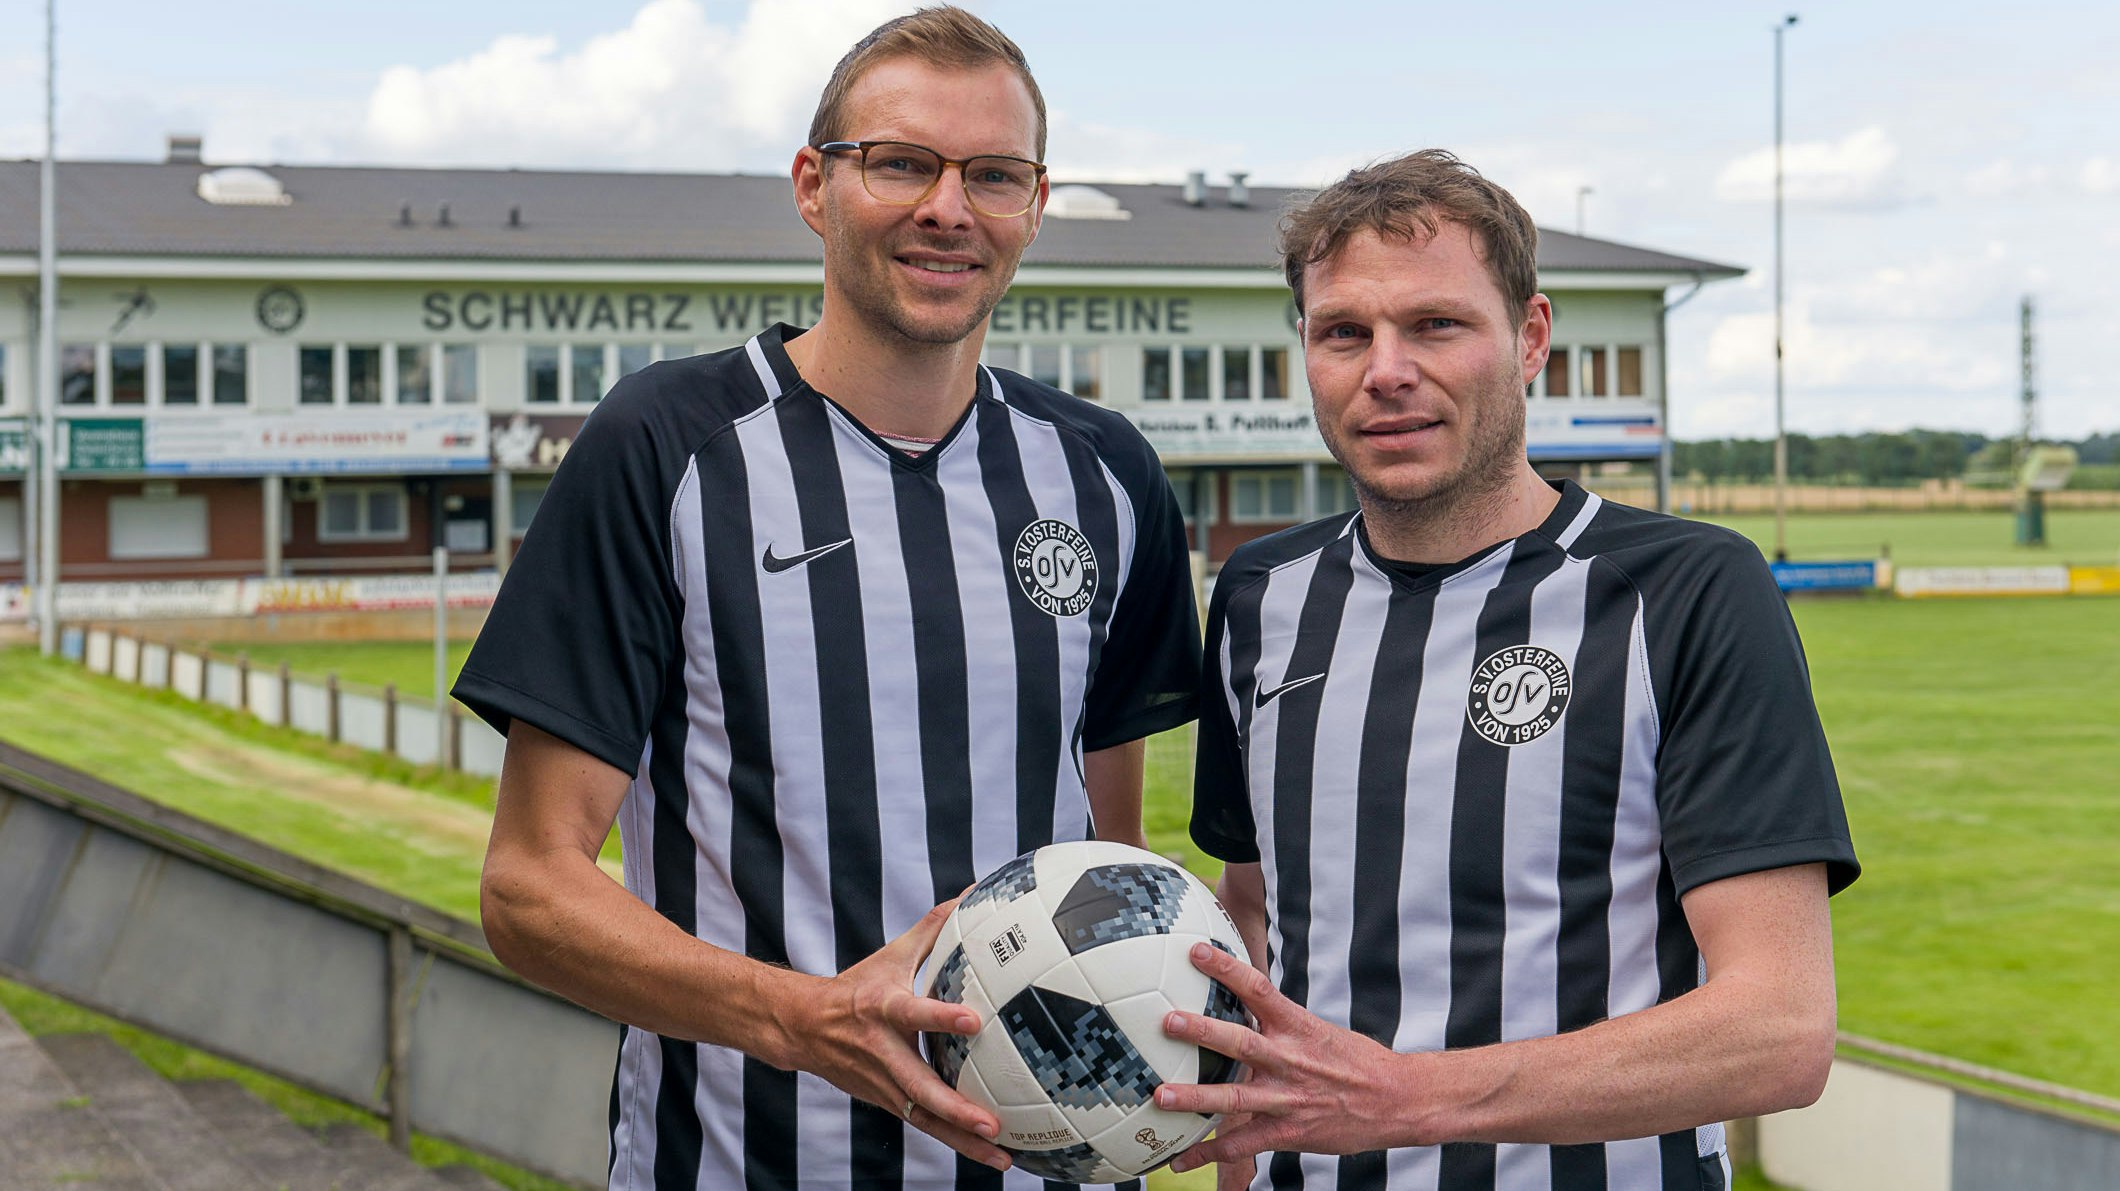 Lebenslang Schwarz-Weiß: Die Brüder Christian (links) und Michael Harpenau im Osterfeiner Stadion. Foto: Wenzel